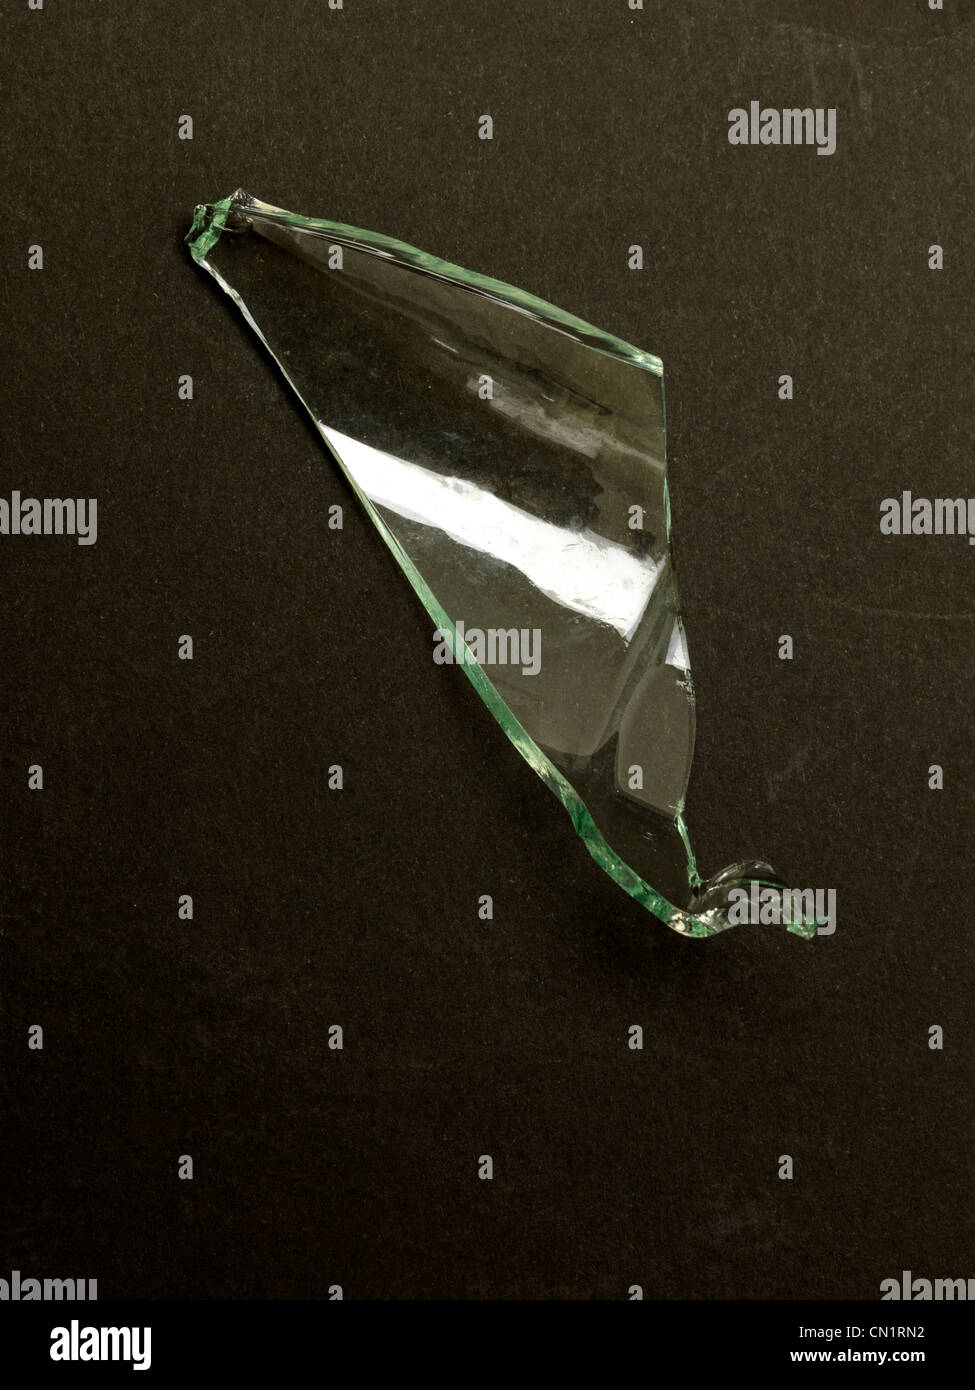 https://c8.alamy.com/comp/CN1RN2/a-sharp-piece-of-broken-glass-CN1RN2.jpg